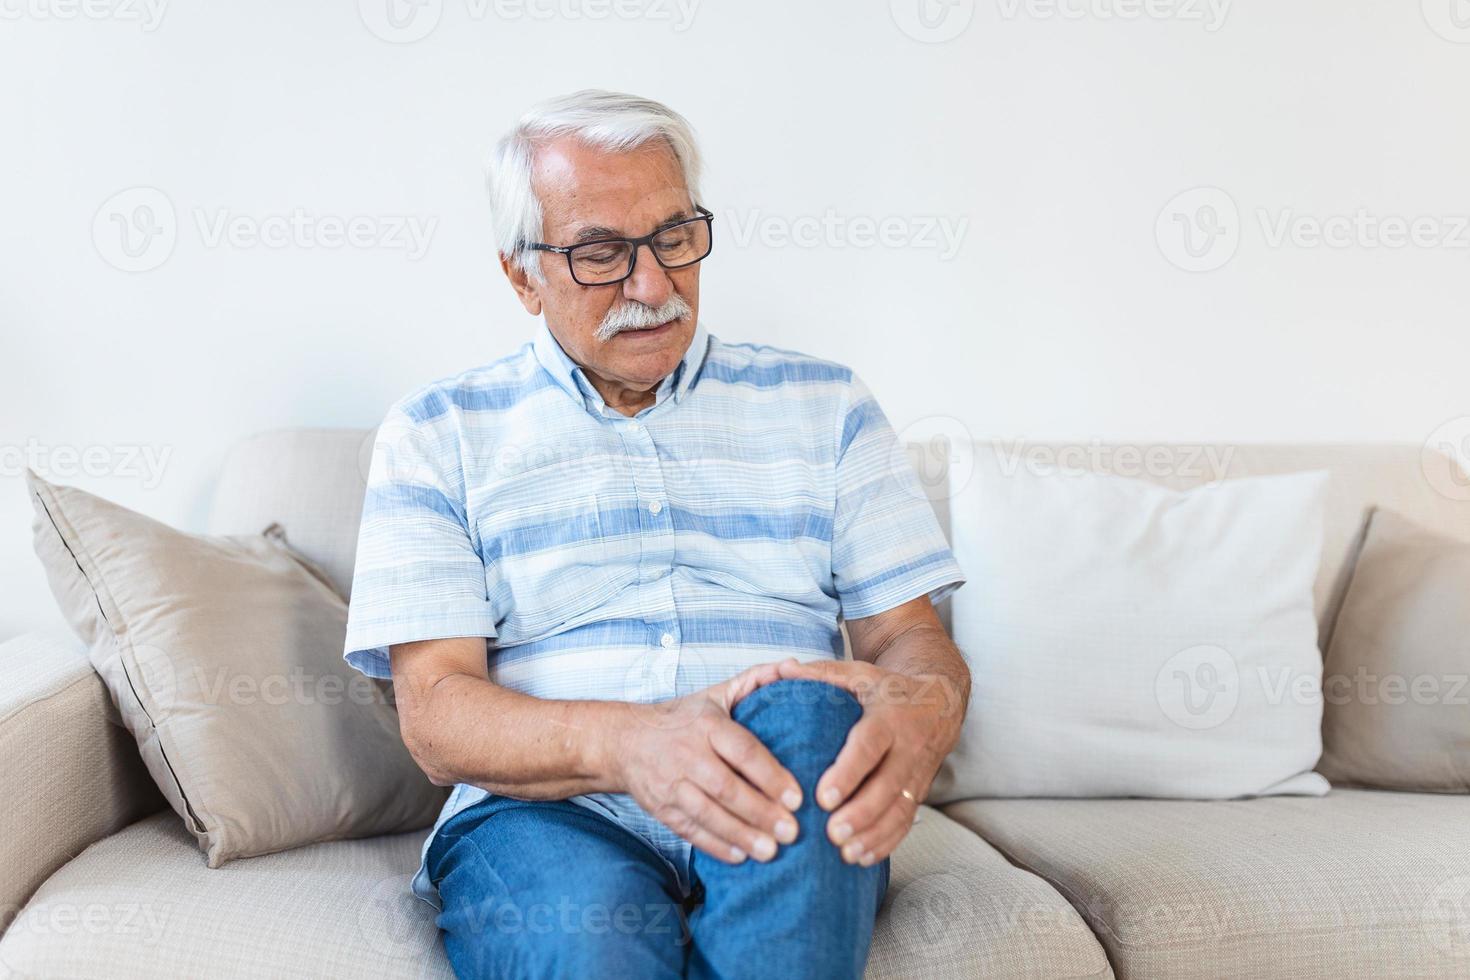 älterer Mann, der zu Hause auf einem Sofa sitzt und sein schmerzhaftes Knie berührt. menschen, gesundheitswesen und problemkonzept - unglücklicher senior, der zu hause unter knieschmerzen leidet foto